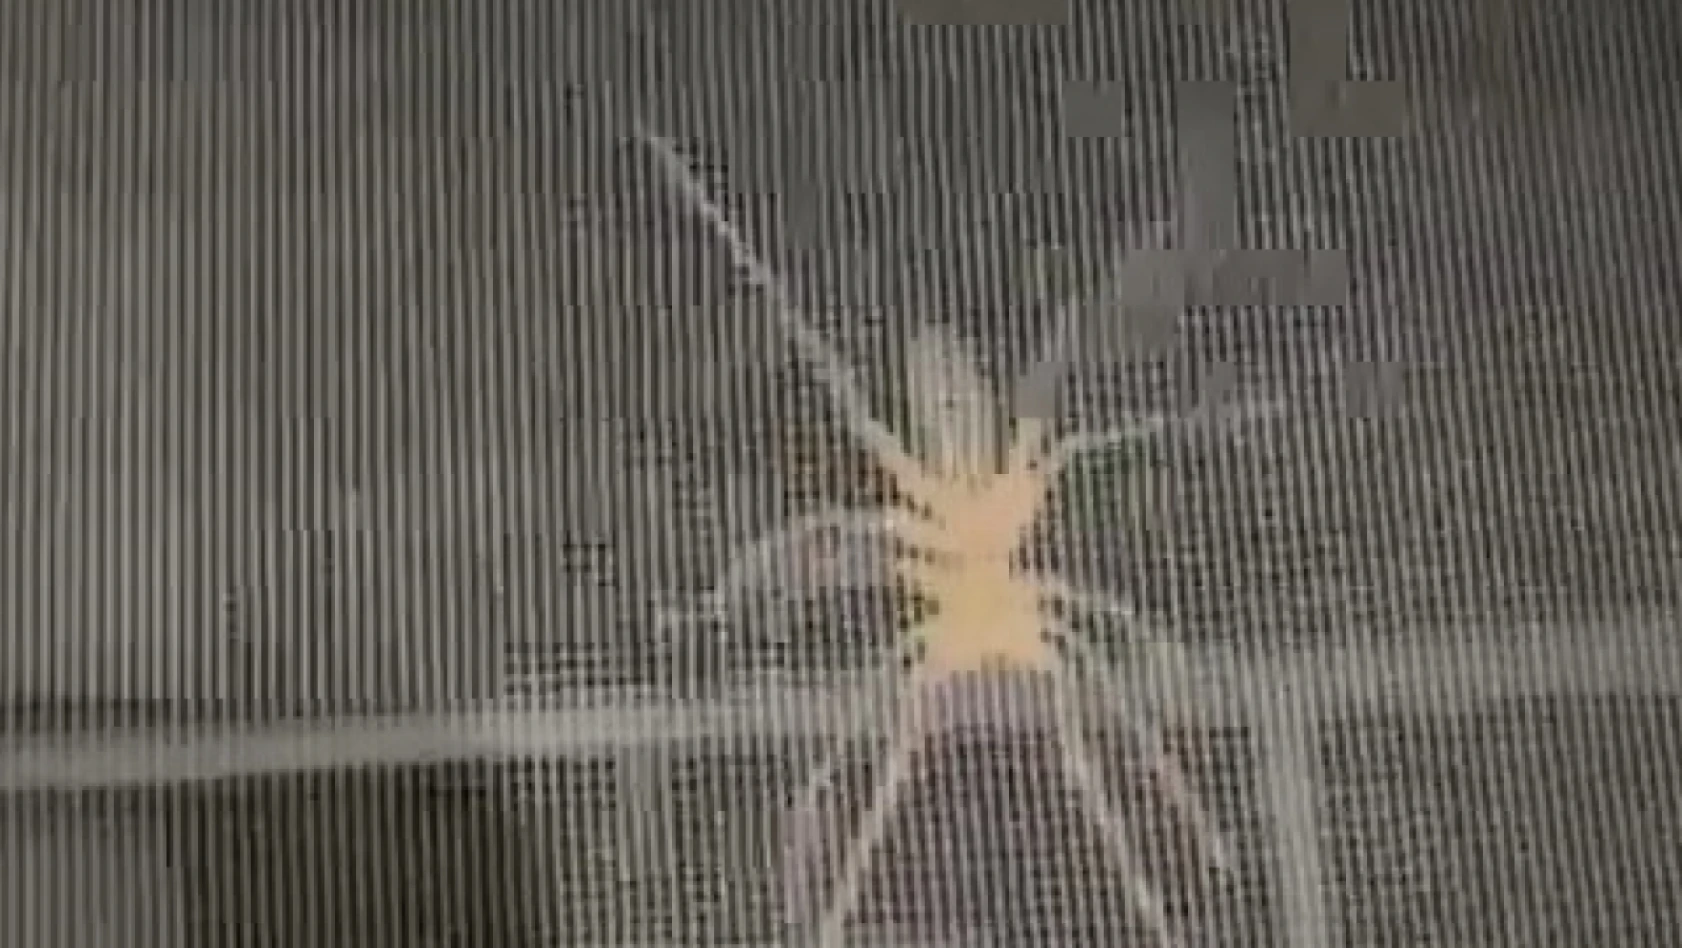 Etçil sarıkız örümceği ev sakinlerini korkuttu